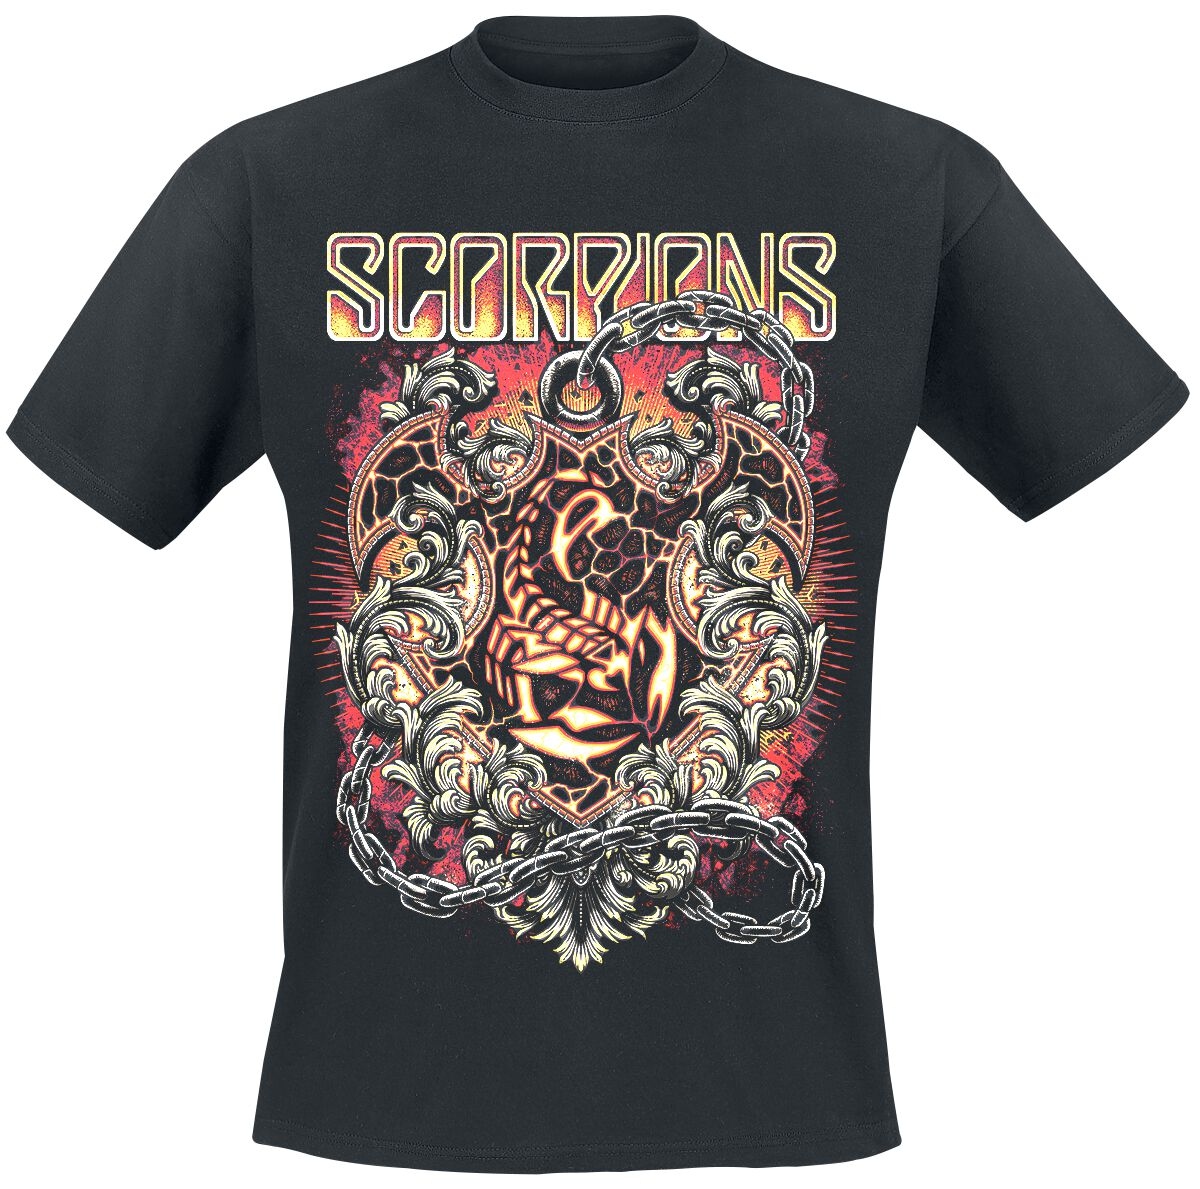 Scorpions T-Shirt - Crest In Chains - M bis 3XL - für Männer - Größe M - schwarz  - Lizenziertes Merchandise!